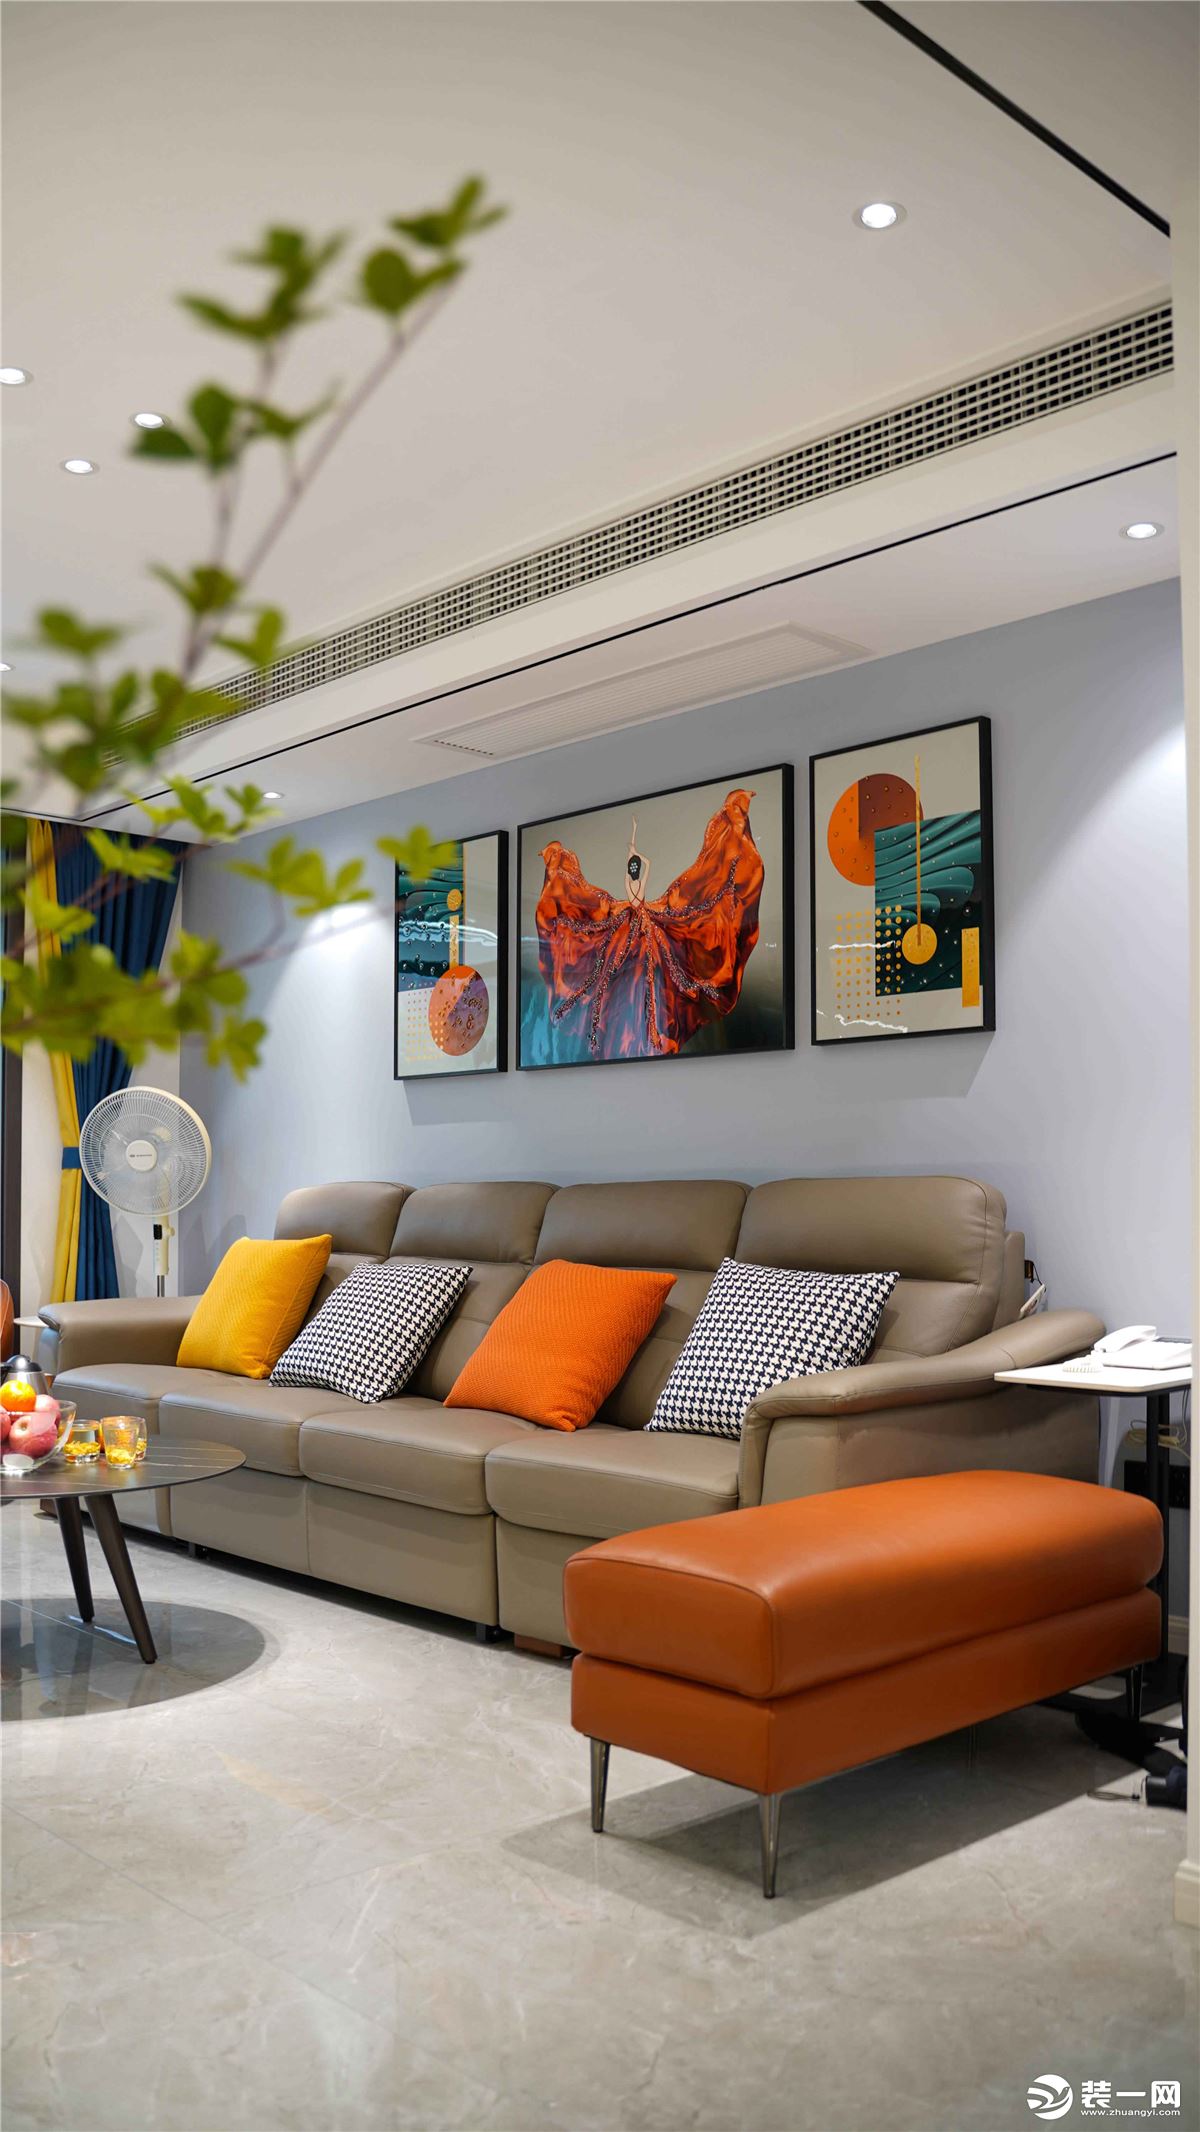 沙发背景墙用浅浅的雾霾蓝色代替大白墙，搭配亮色系艺术装饰画，空间顿时有了活力与雅致感。